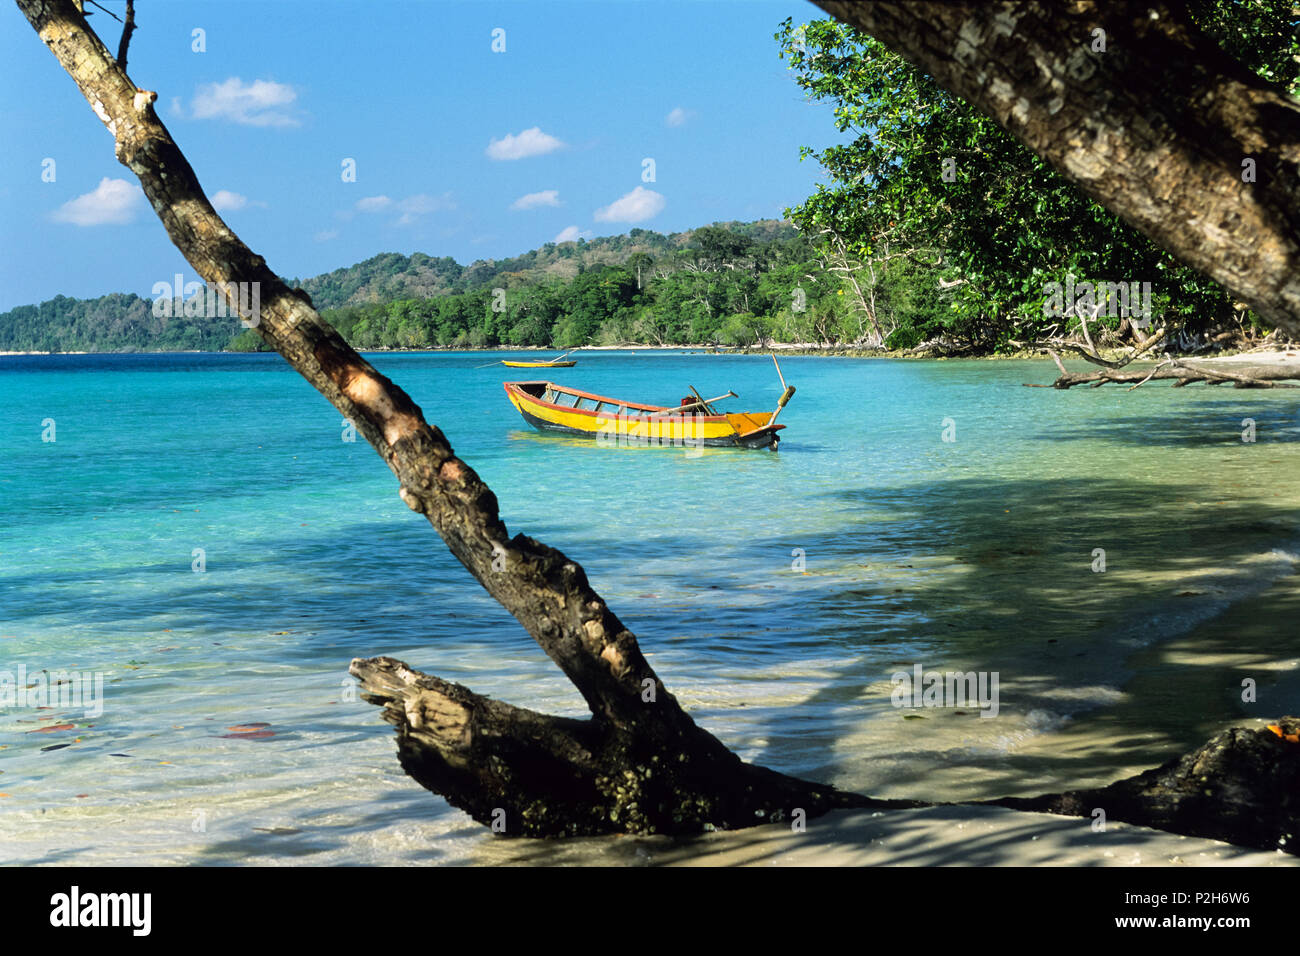 Rainforest répond à plage, plage d'éléphant avec des bateaux, Havelock Island, îles Andaman, en Inde Banque D'Images